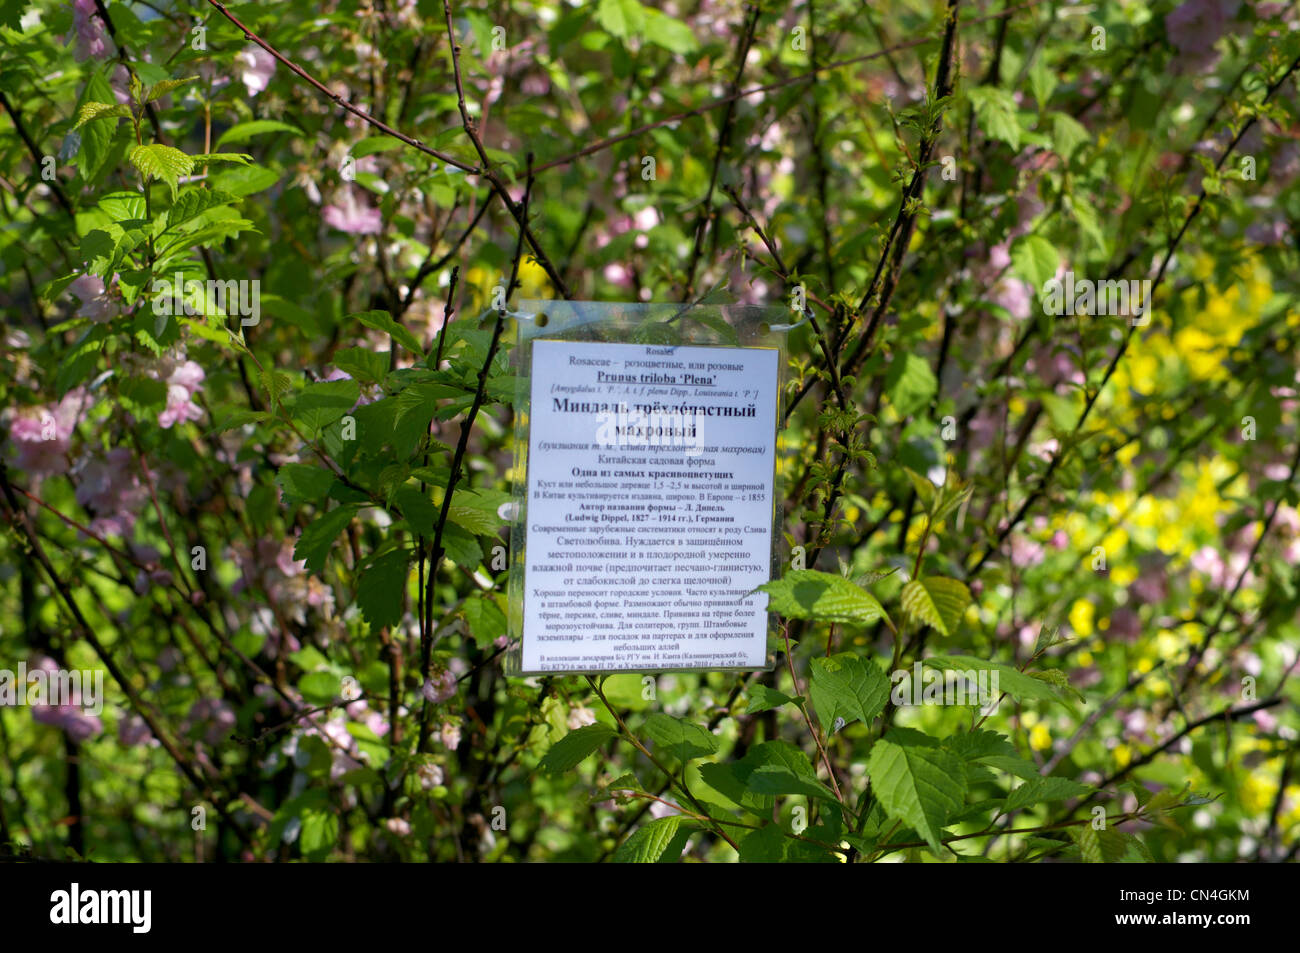 Flowering Prunus triloba plena at Kaliningrad botanical garden Stock Photo